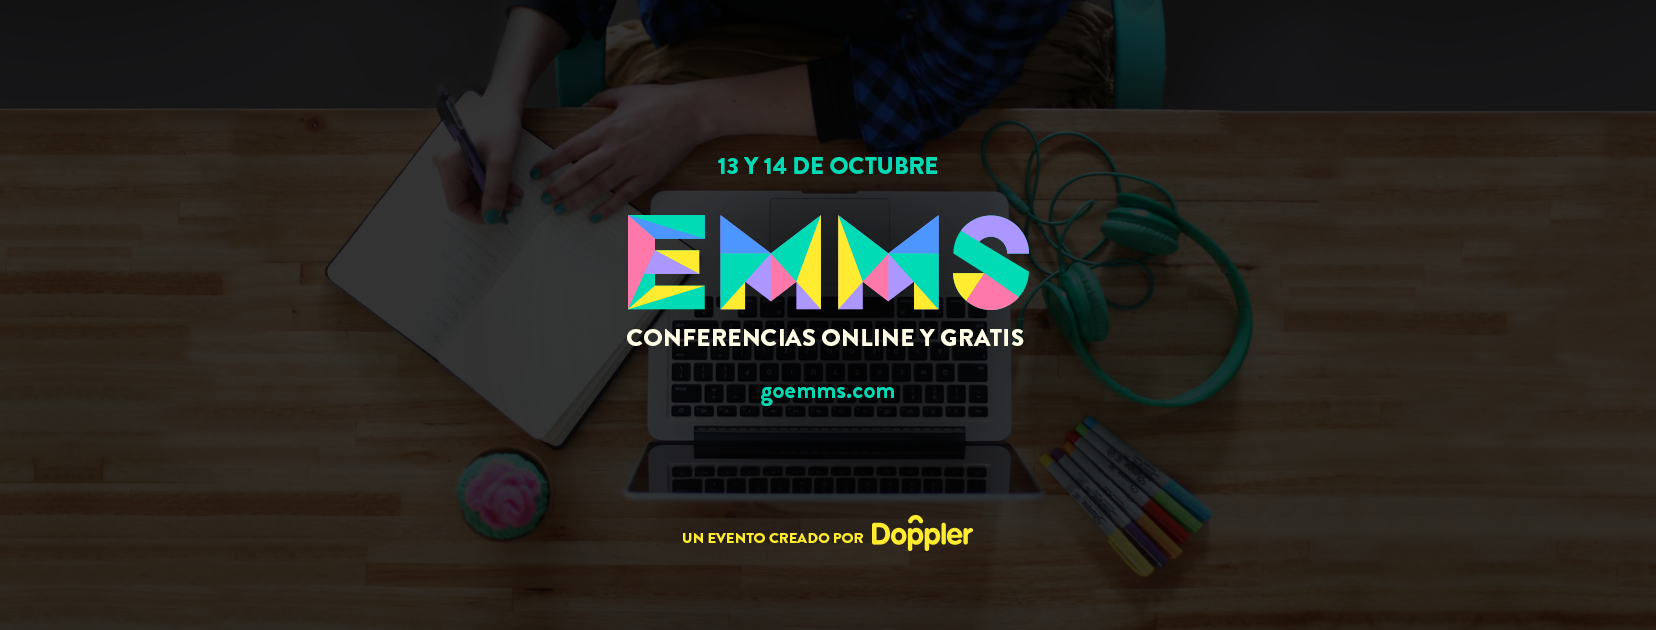 EMMS 2016: regresan las conferencias online y gratuitas de marketing